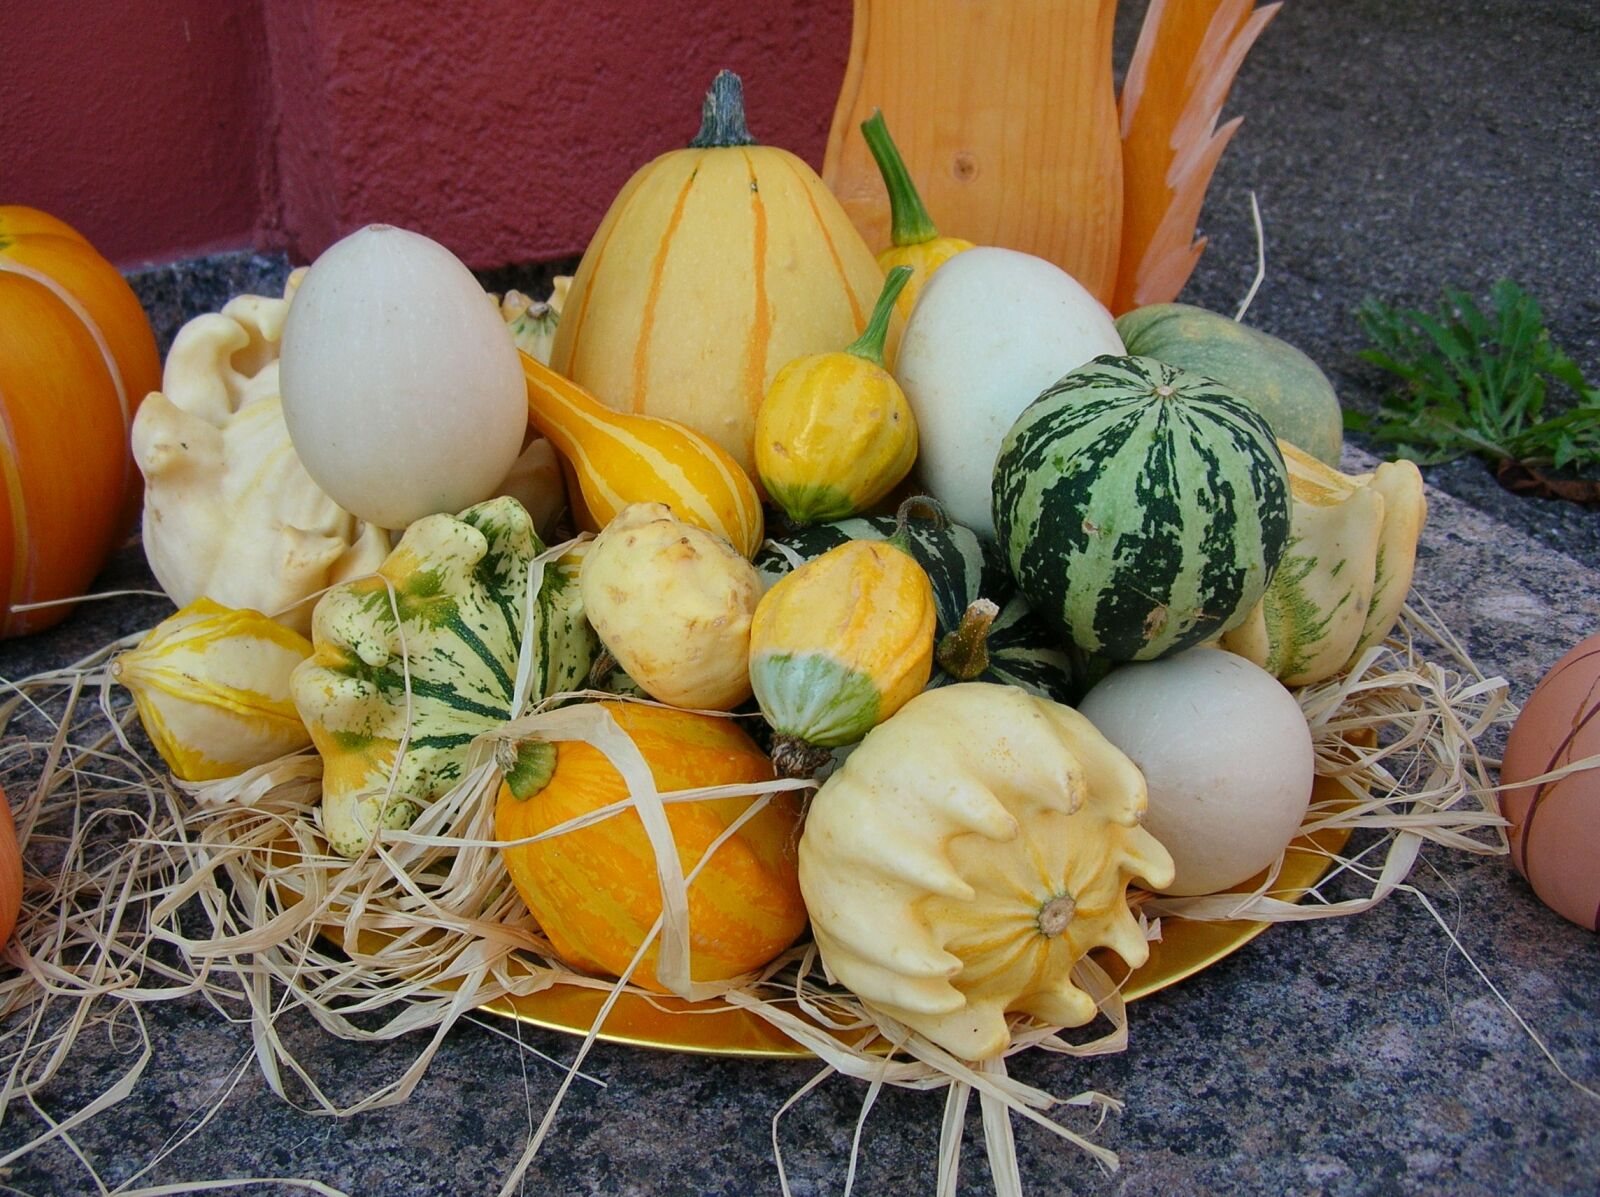 Nikon E4800 sample photo. Food, pumpkin, vegetables photography